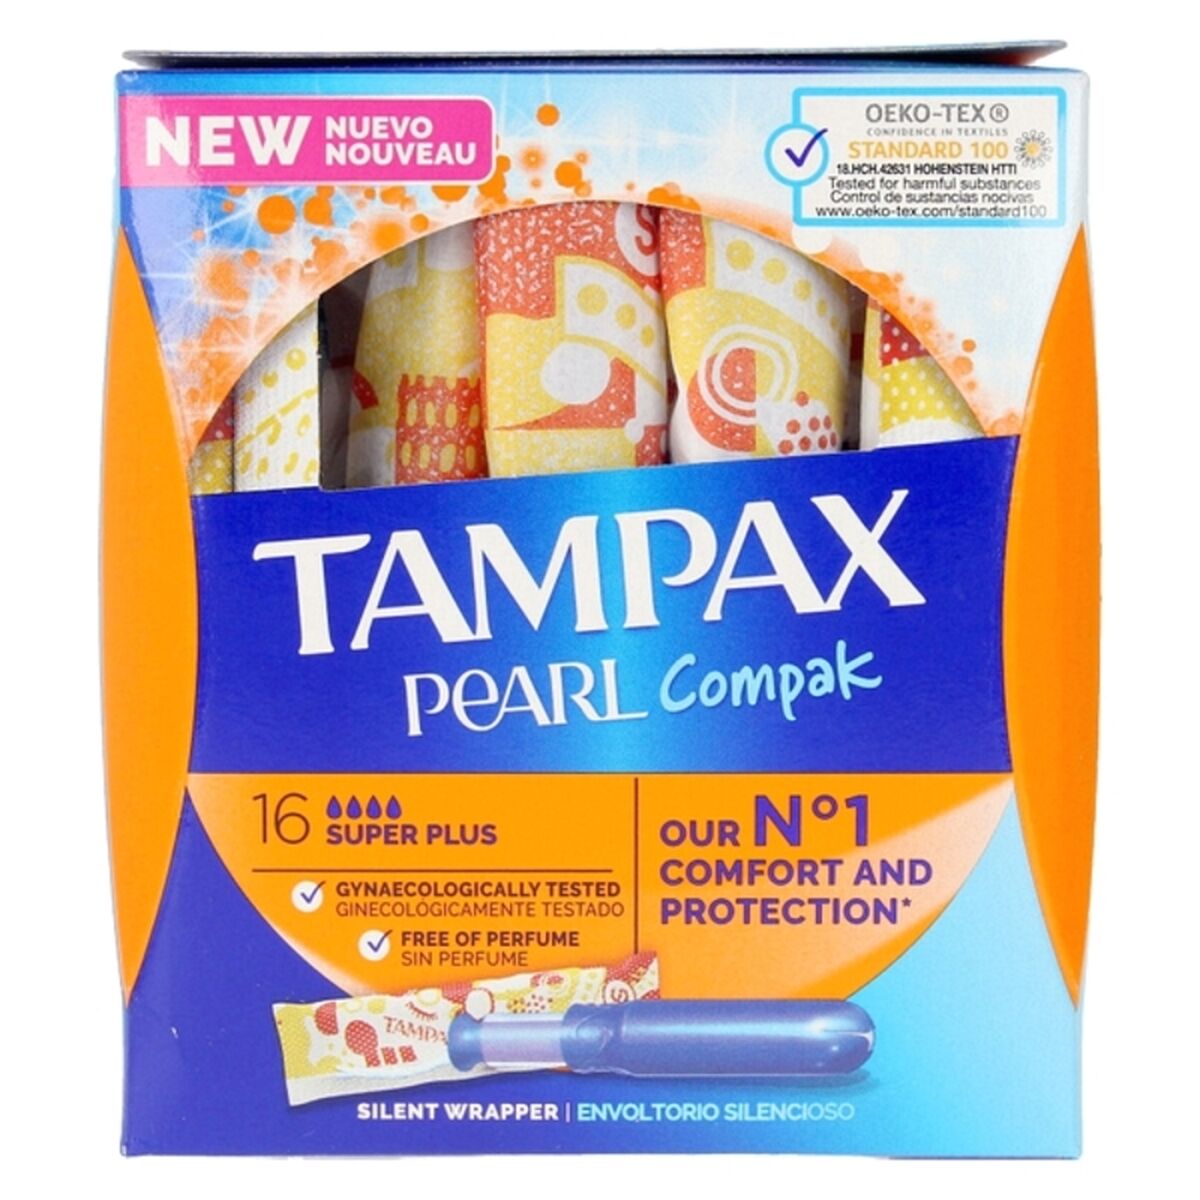 Tampon Pearl Compak Tampax